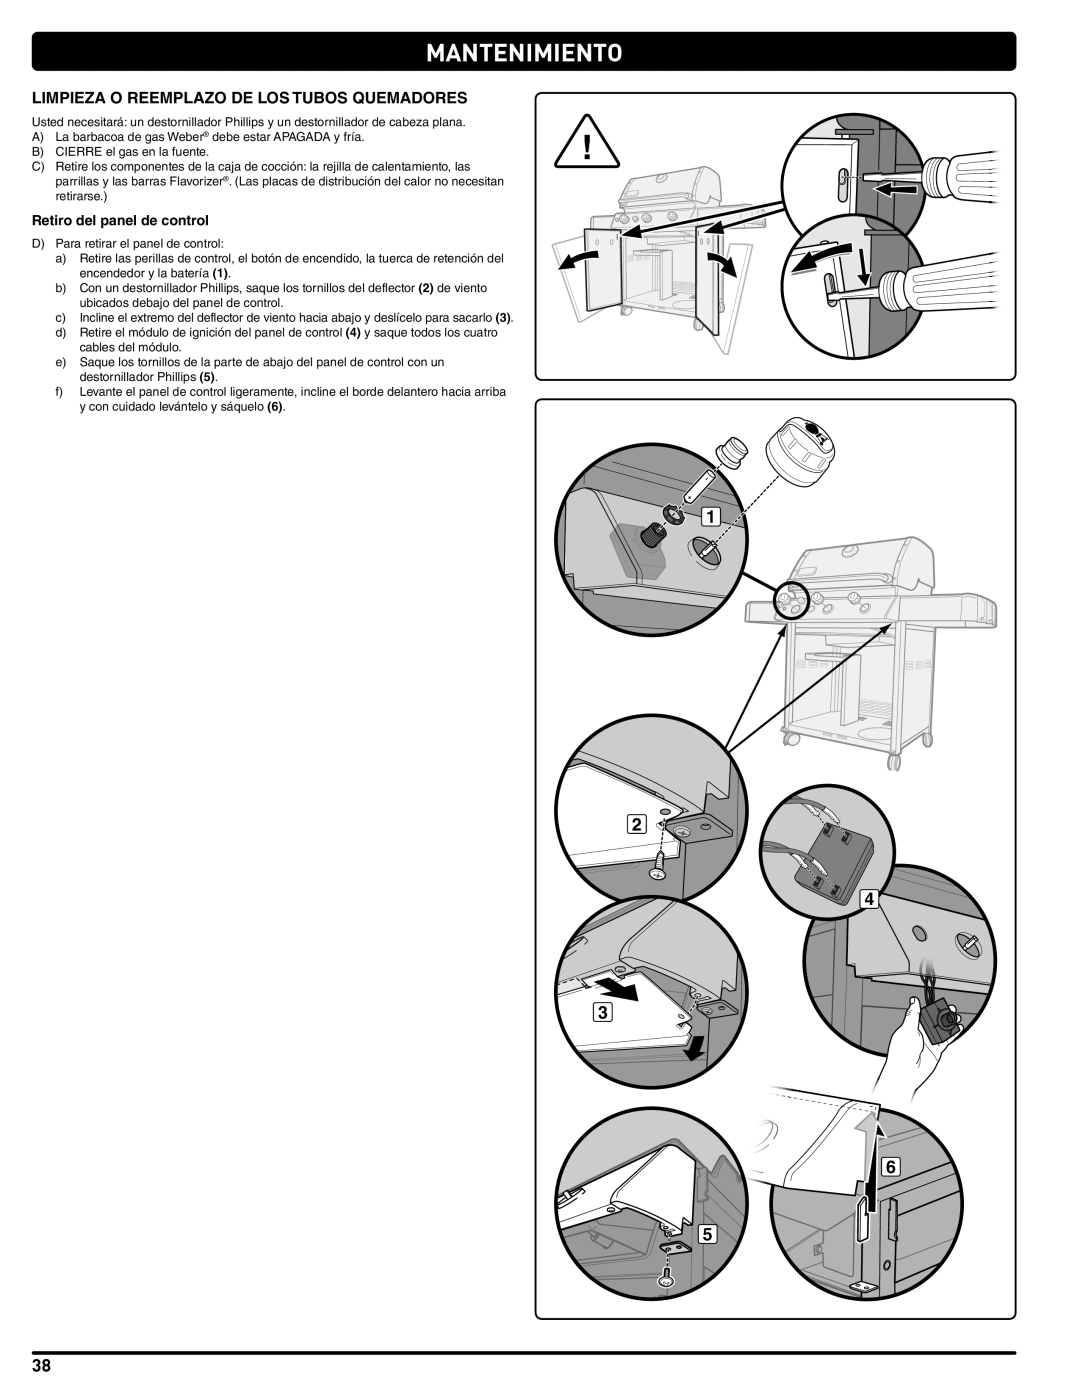 Weber 56515 manual Mantenimiento, Limpieza O Reemplazo De Los Tubos Quemadores, Retiro del panel de control 